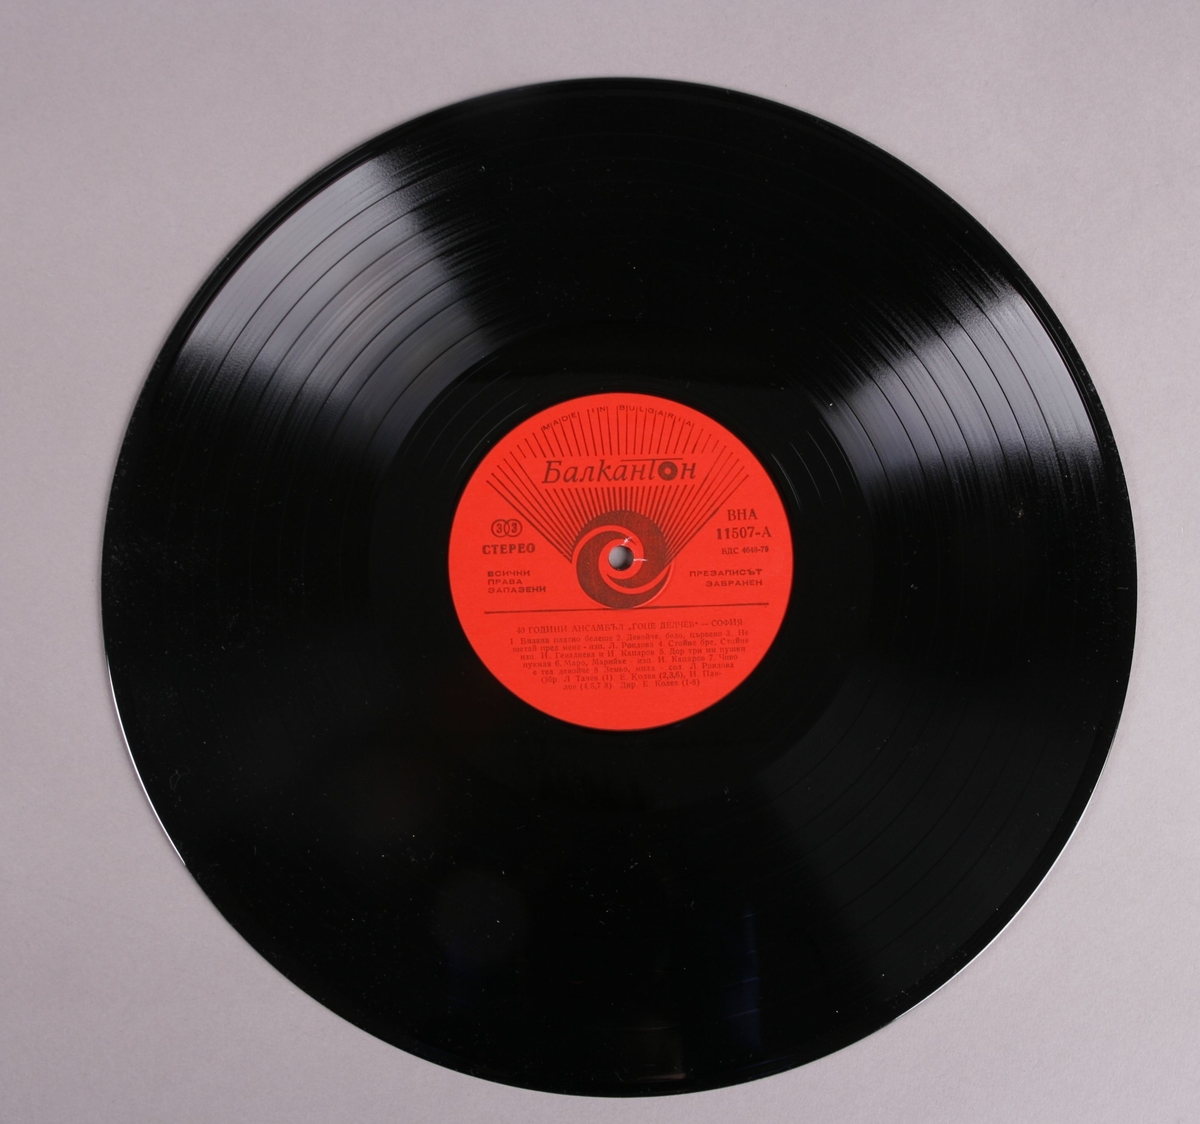 Grammofonplate i svart vinyl med plateomslag av papp. Platen ligger i en papirlomme.